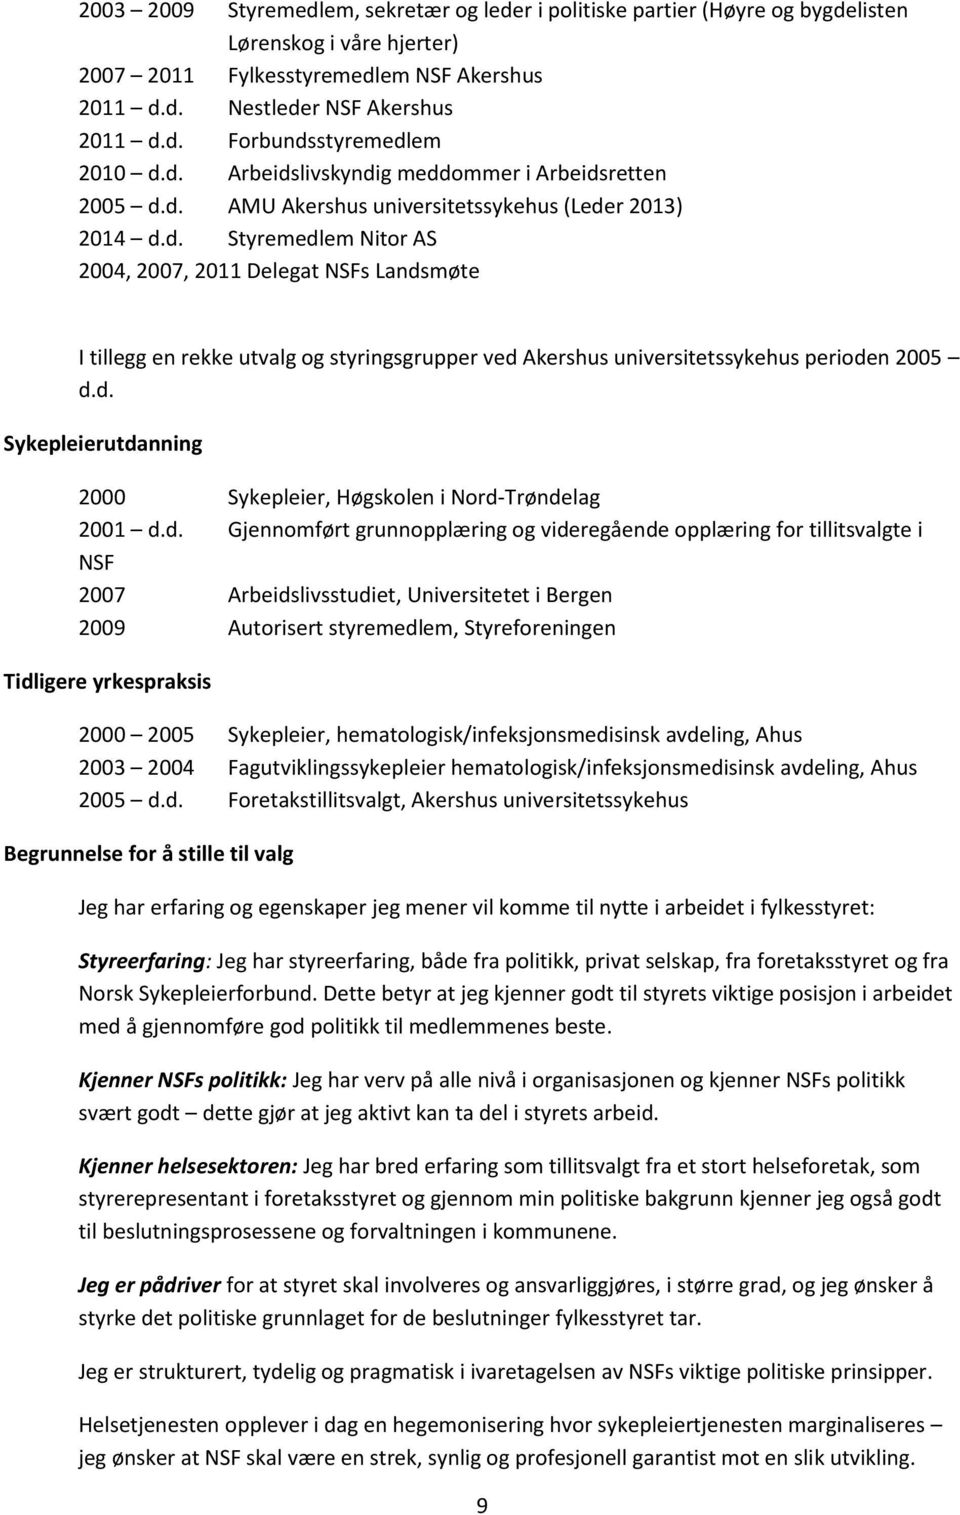 d. Sykepleierutdanning 2000 Sykepleier, Høgskolen i Nord-Trøndelag 2001 d.d. Gjennomført grunnopplæring og videregående opplæring for tillitsvalgte i NSF 2007 Arbeidslivsstudiet, Universitetet i